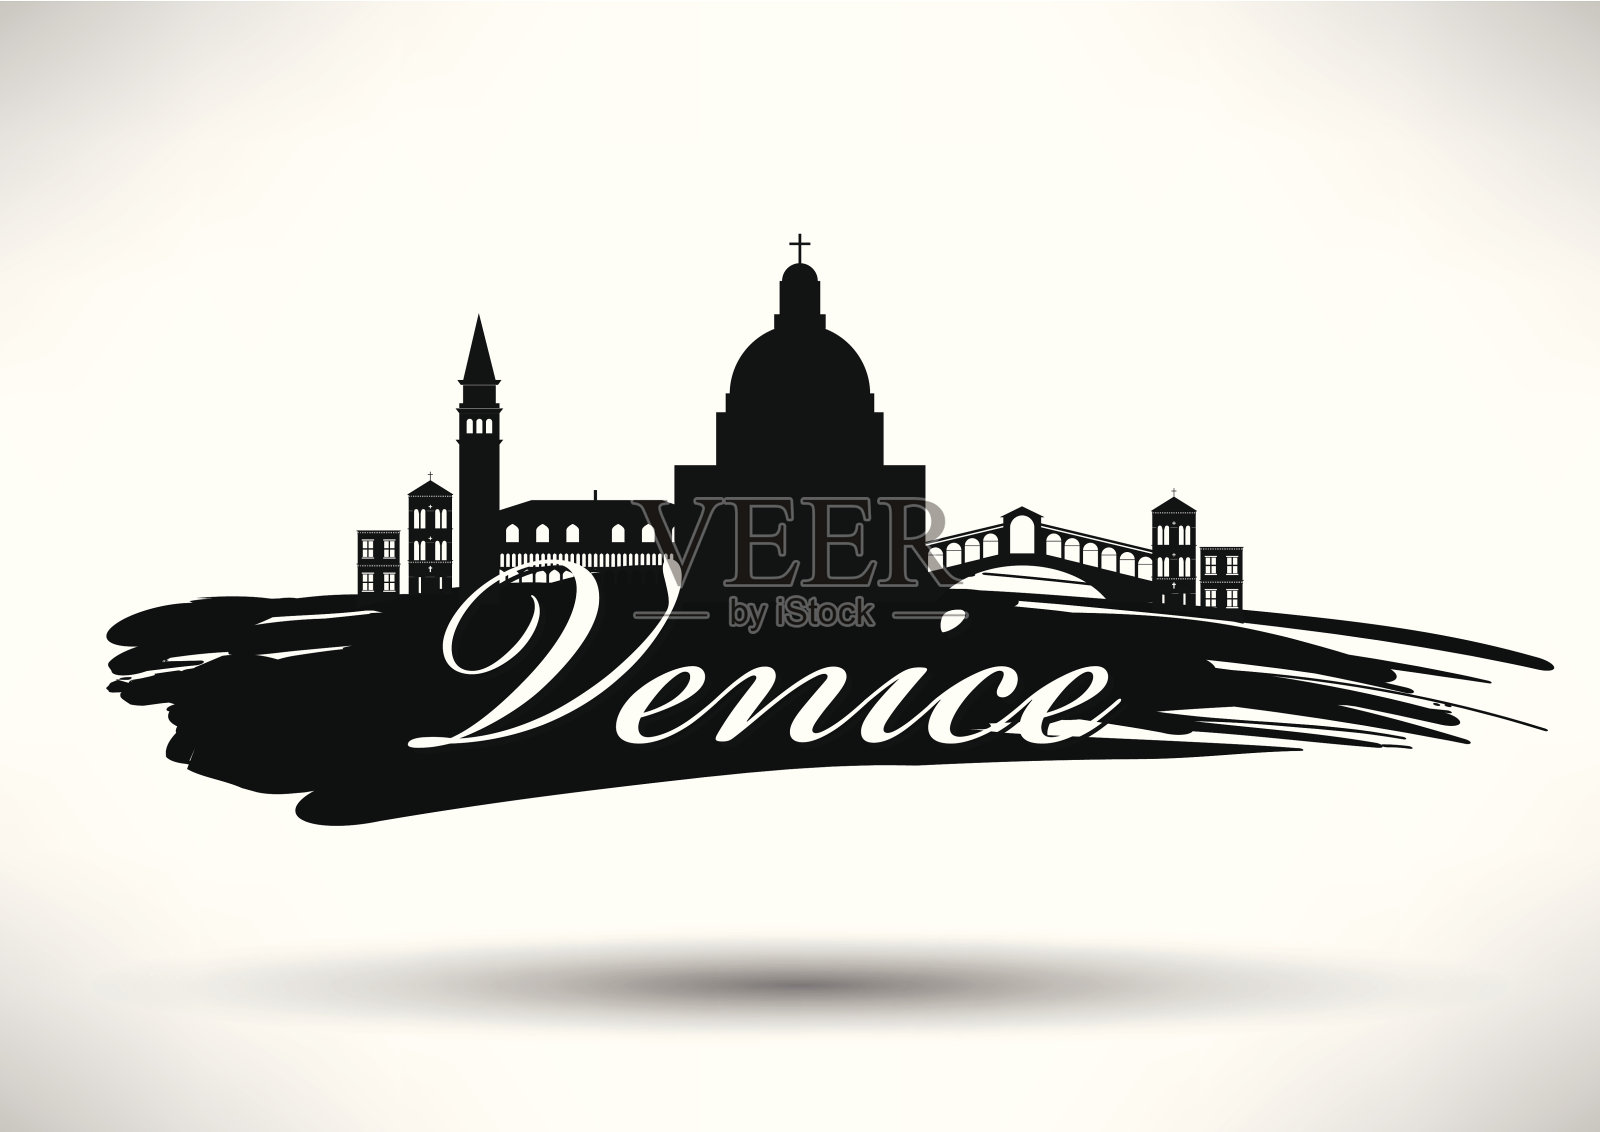 字体设计的威尼斯城市天际线插画图片素材